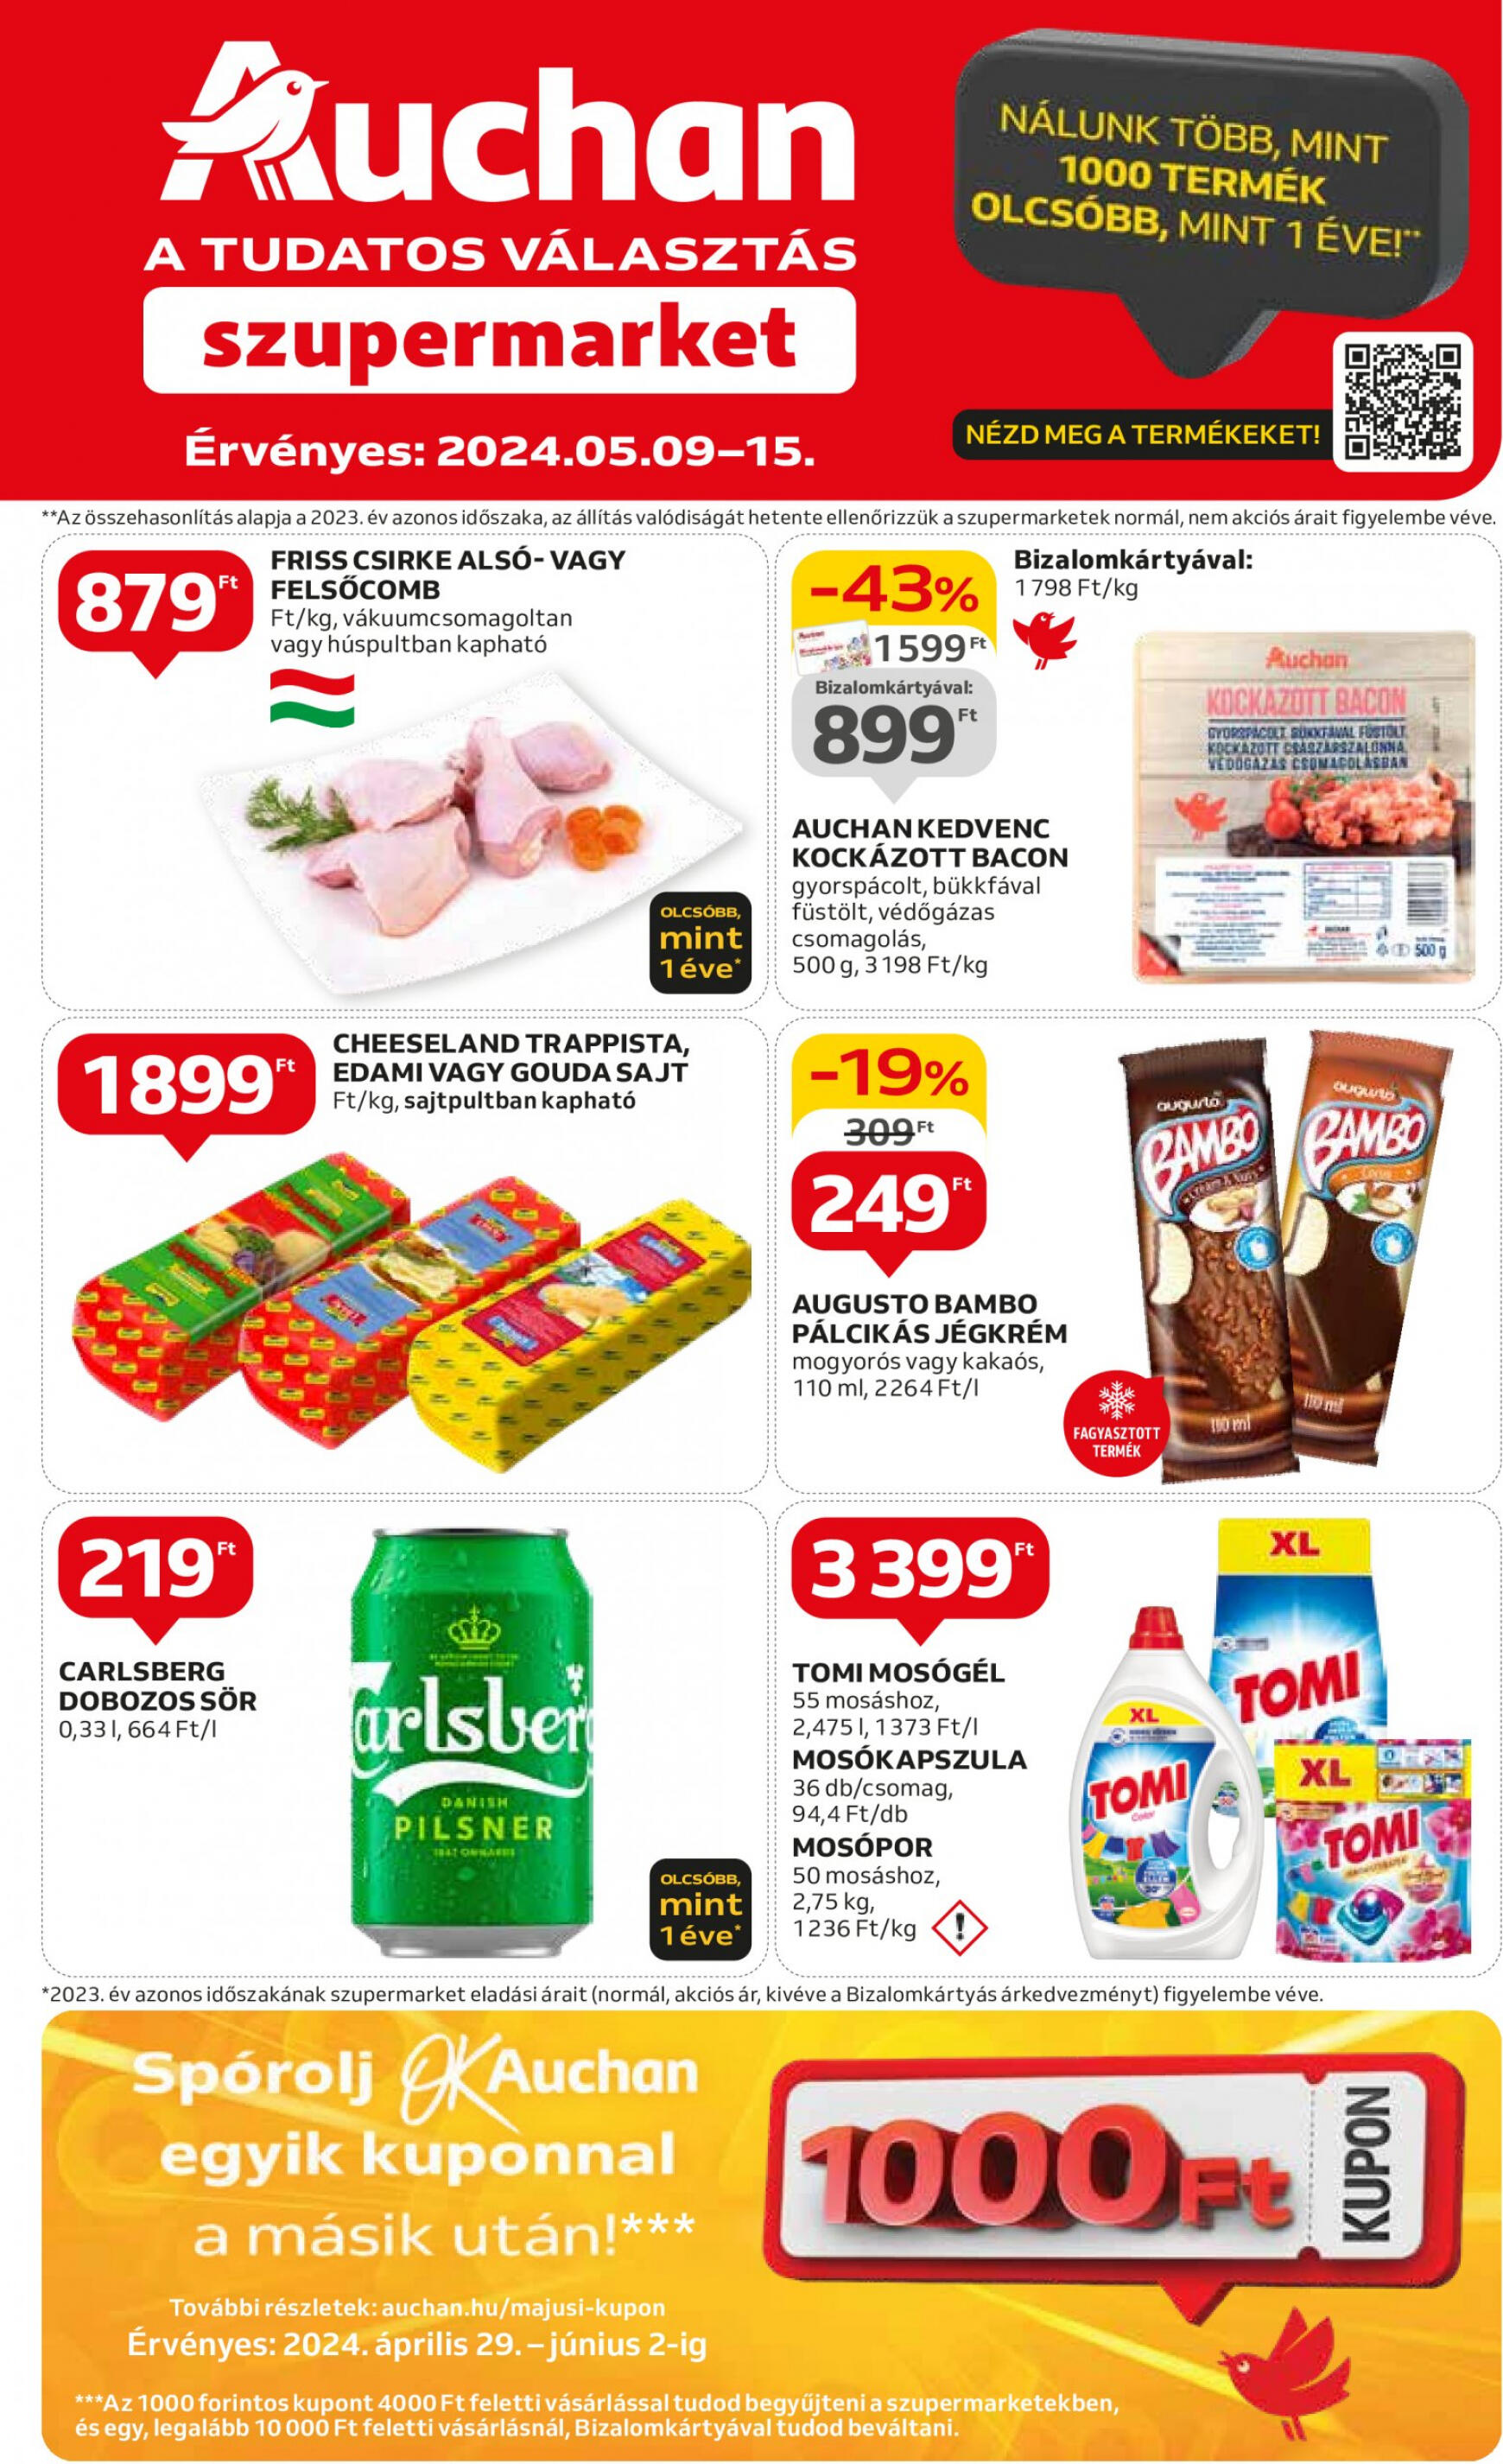 auchan - Aktuális újság Auchan szupermarket 05.09. - 05.15. - page: 1